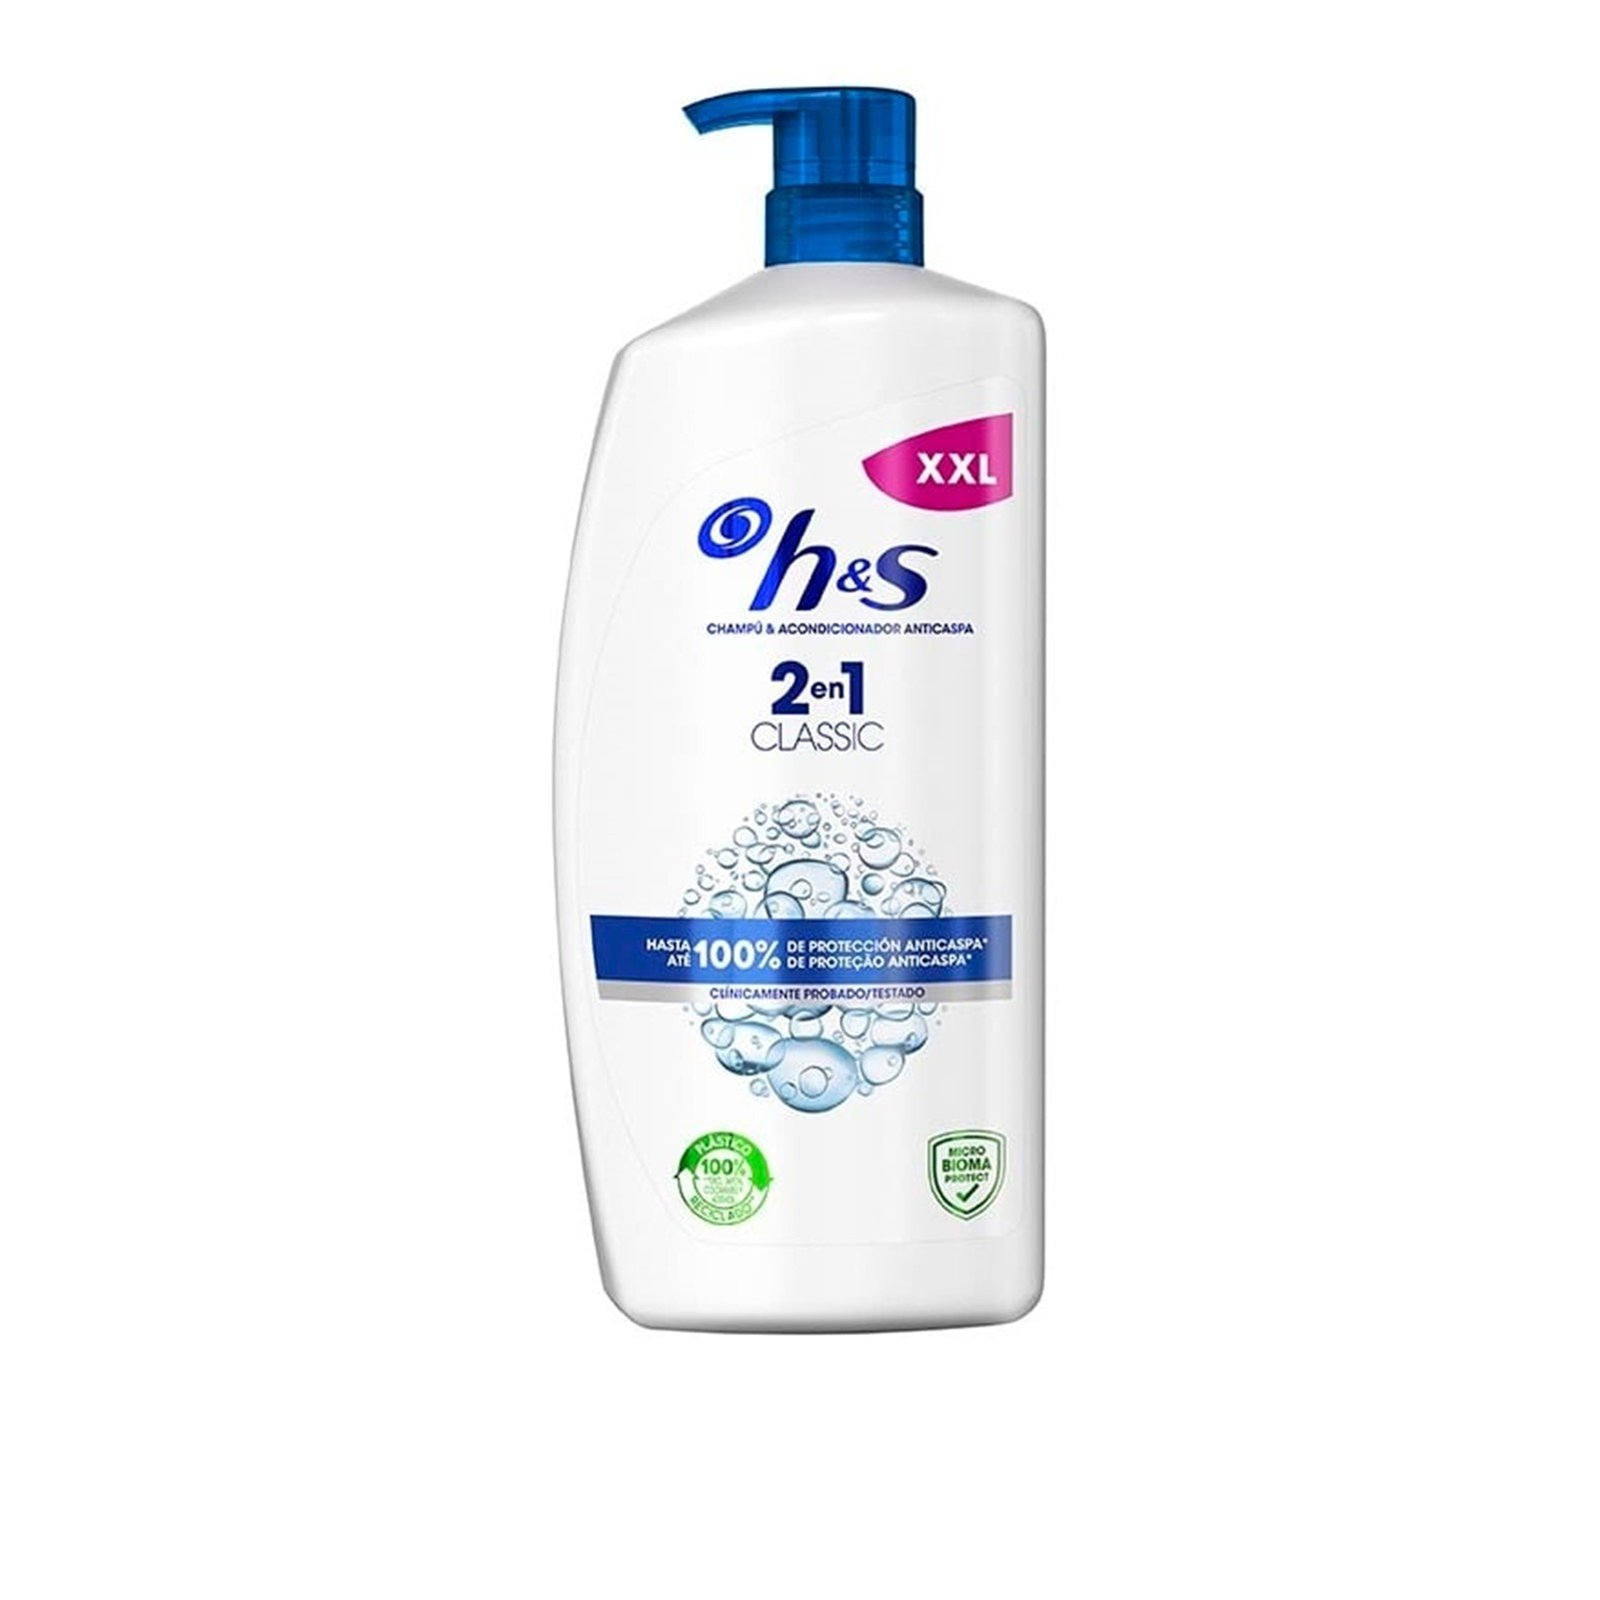 H&S Classic Clean 2-In-1 Shampoo 1L (33.8 fl oz)